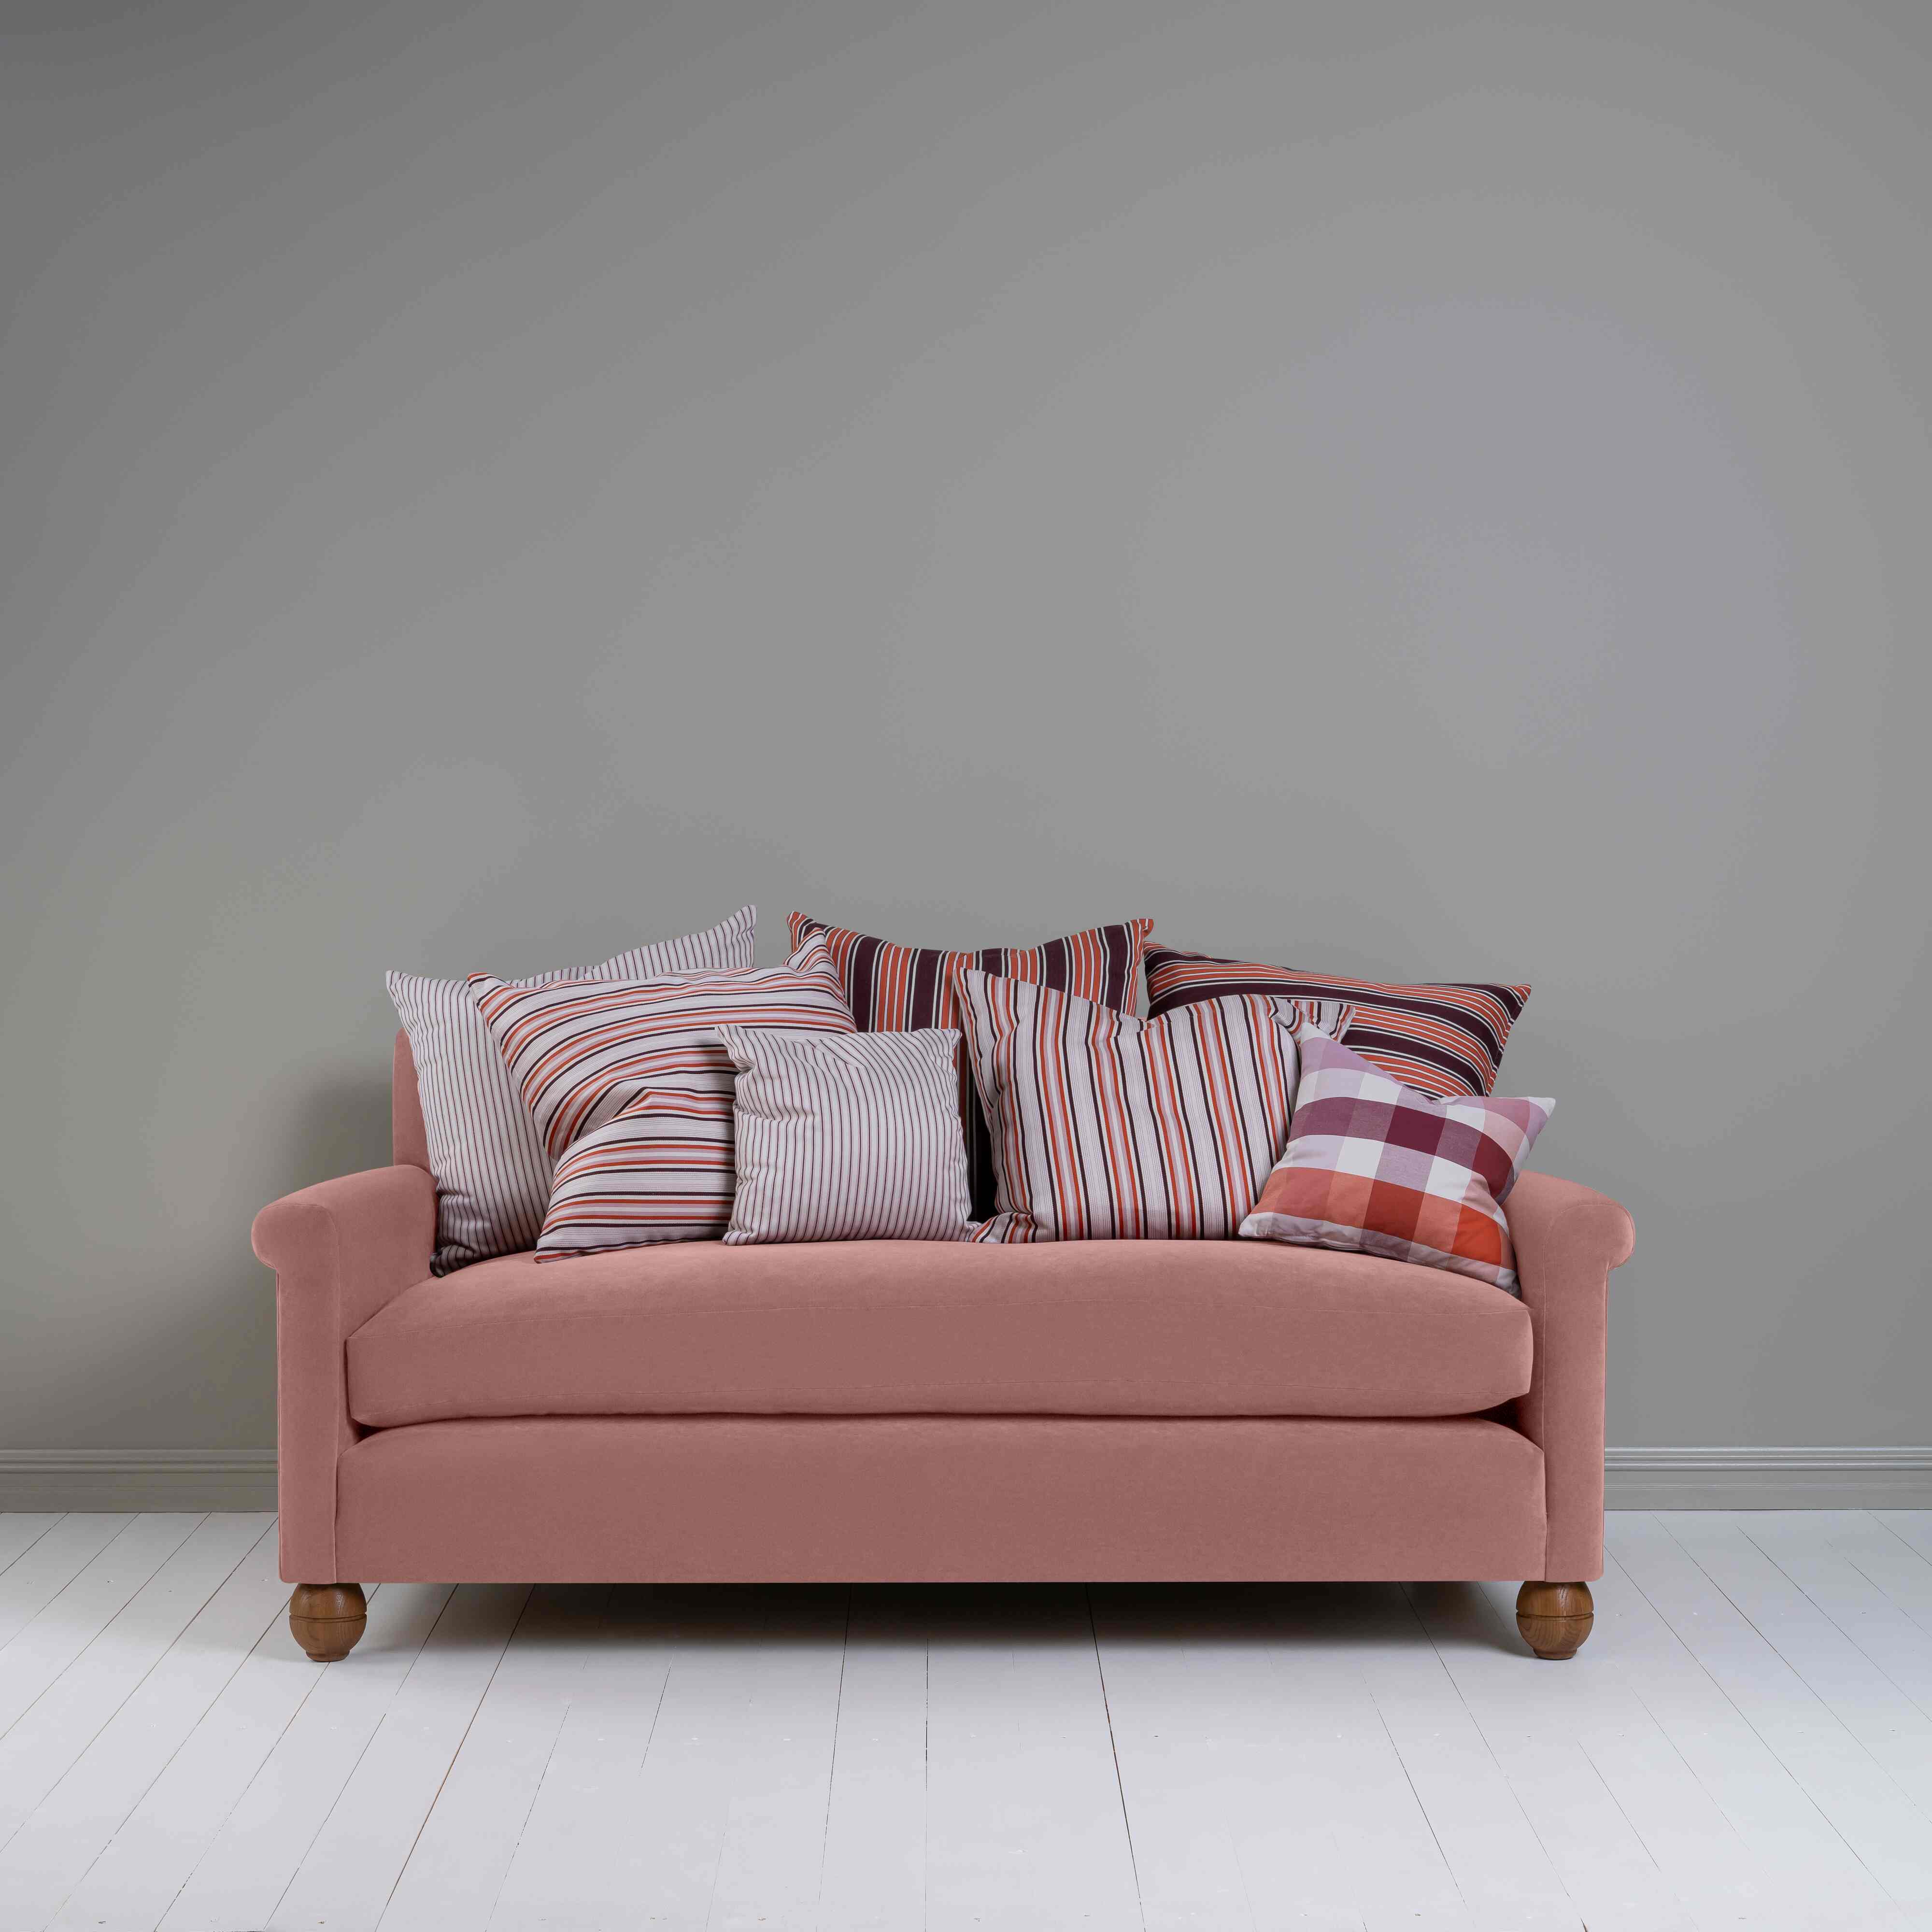  Idler 3 Seater Sofa in Intelligent Velvet Rose 